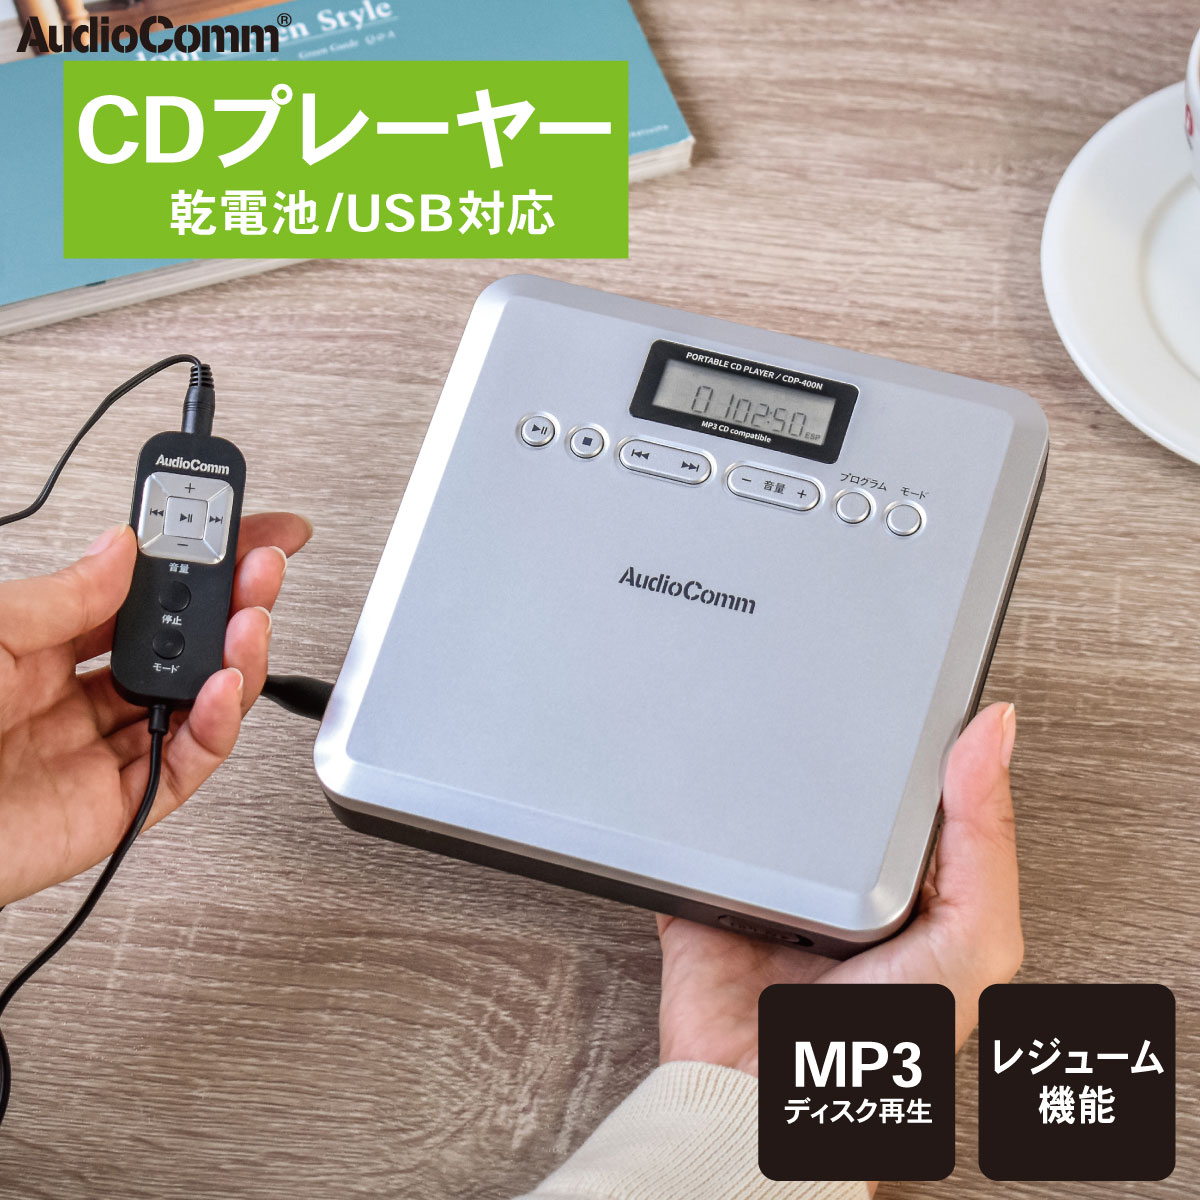 AudioComm CDプレーヤー ポータブル MP3対応 USB電源 電池式 英会話 英語学習 語学勉強 シルバー｜CDP-400N 03-7240 オーム電機